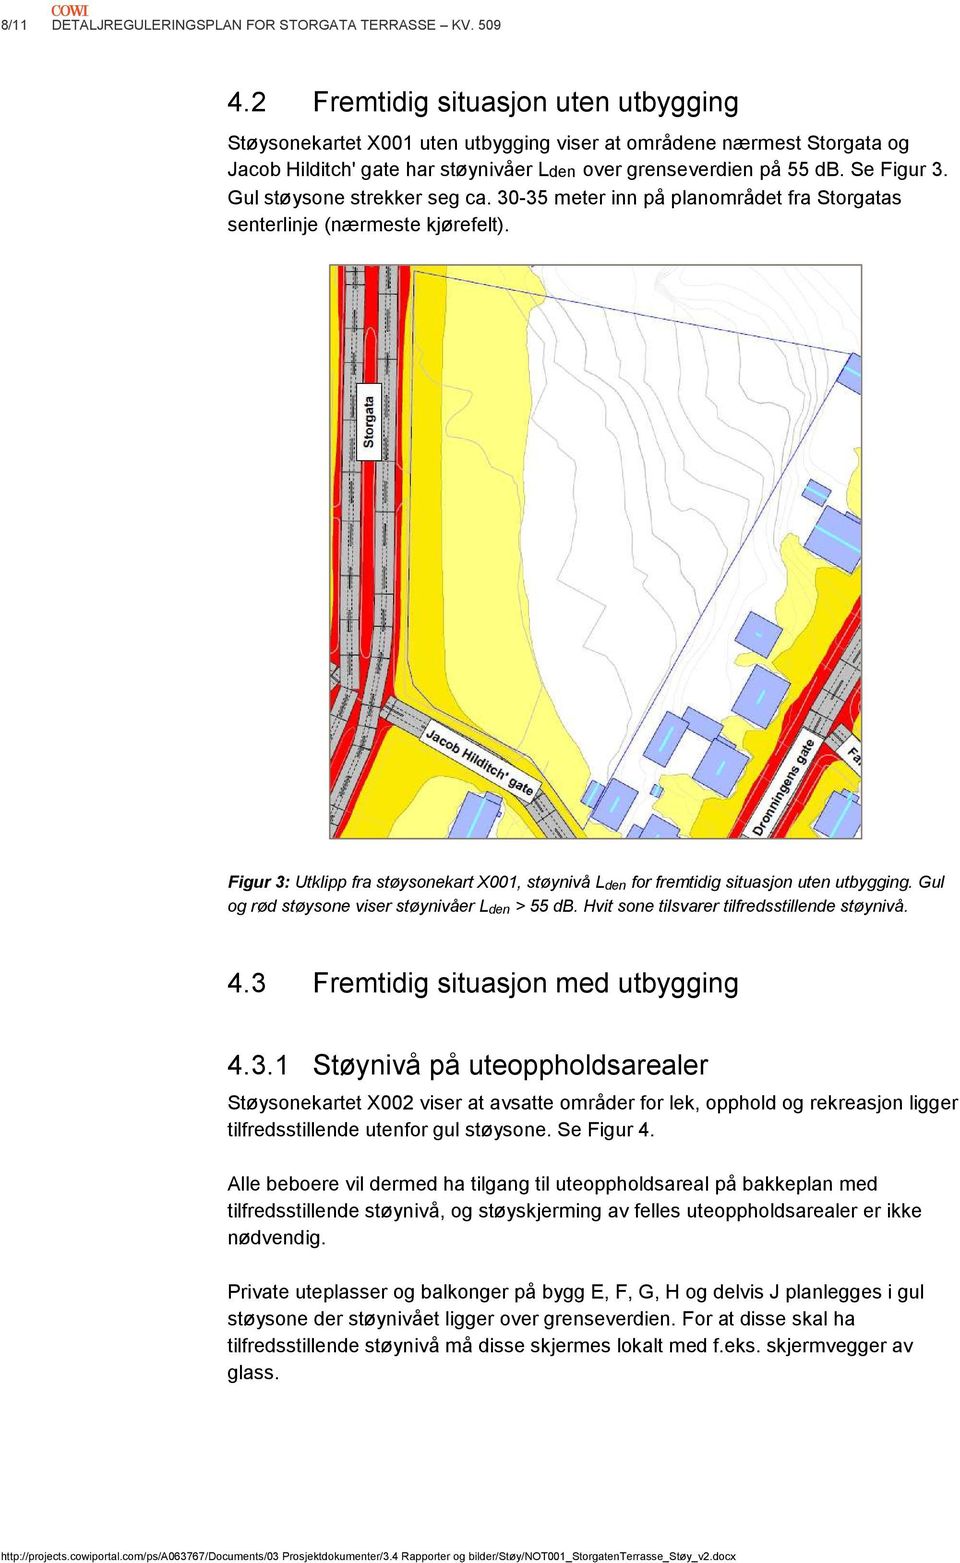 Gul støysone strekker seg ca. 30-35 meter inn på planområdet fra Storgatas senterlinje (nærmeste kjørefelt).